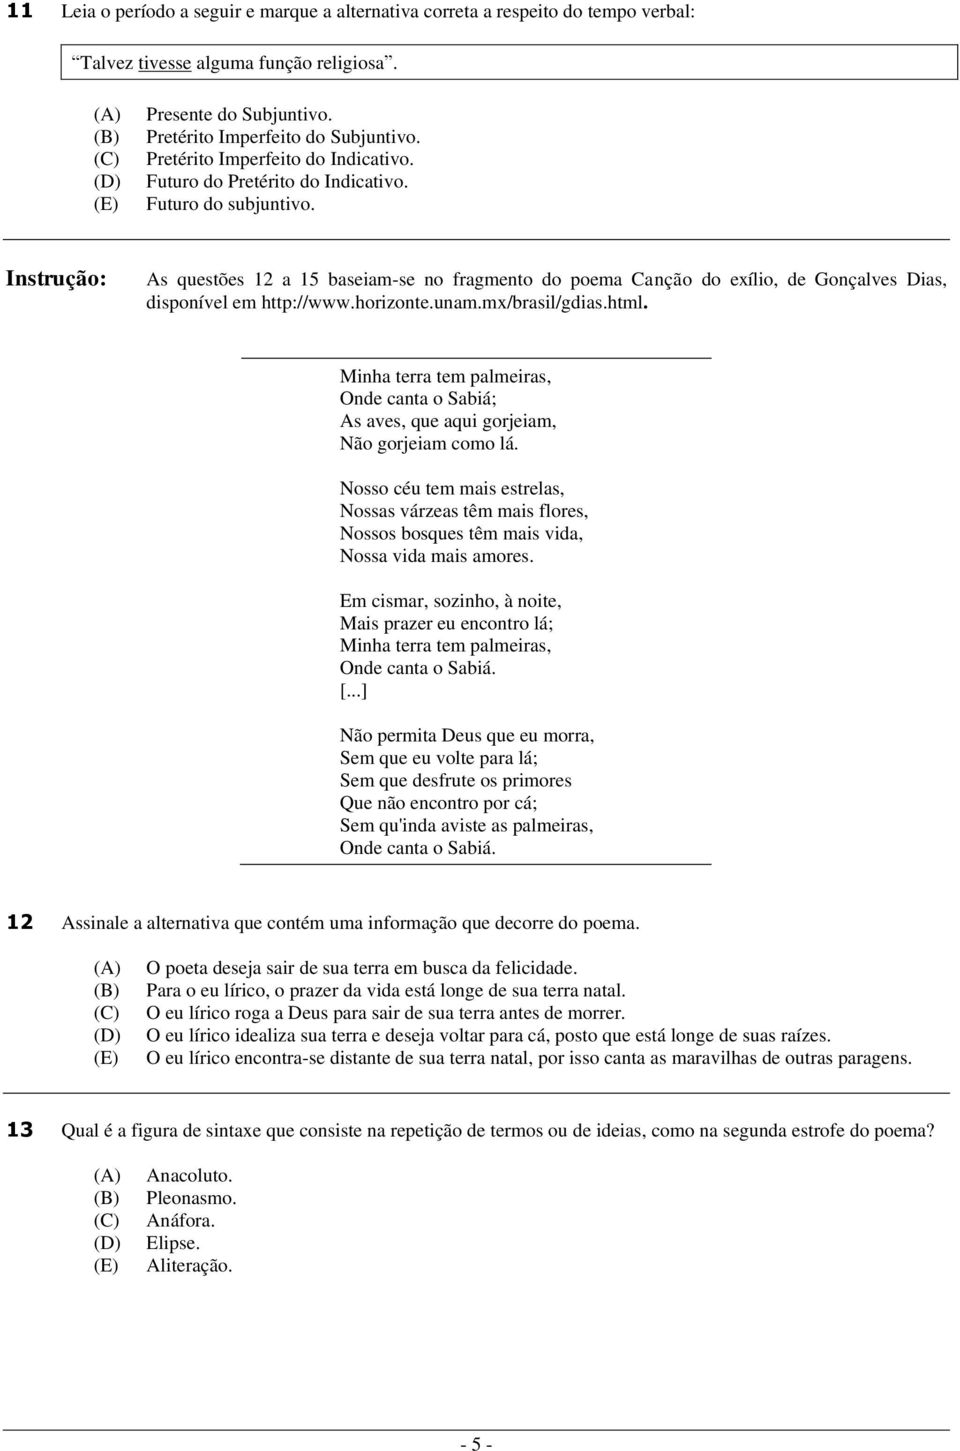 Instrução: As questões 1 a 15 baseiam-se no fragmento do poema Canção do exílio, de Gonçalves Dias, disponível em http://www.horizonte.unam.mx/brasil/gdias.html.